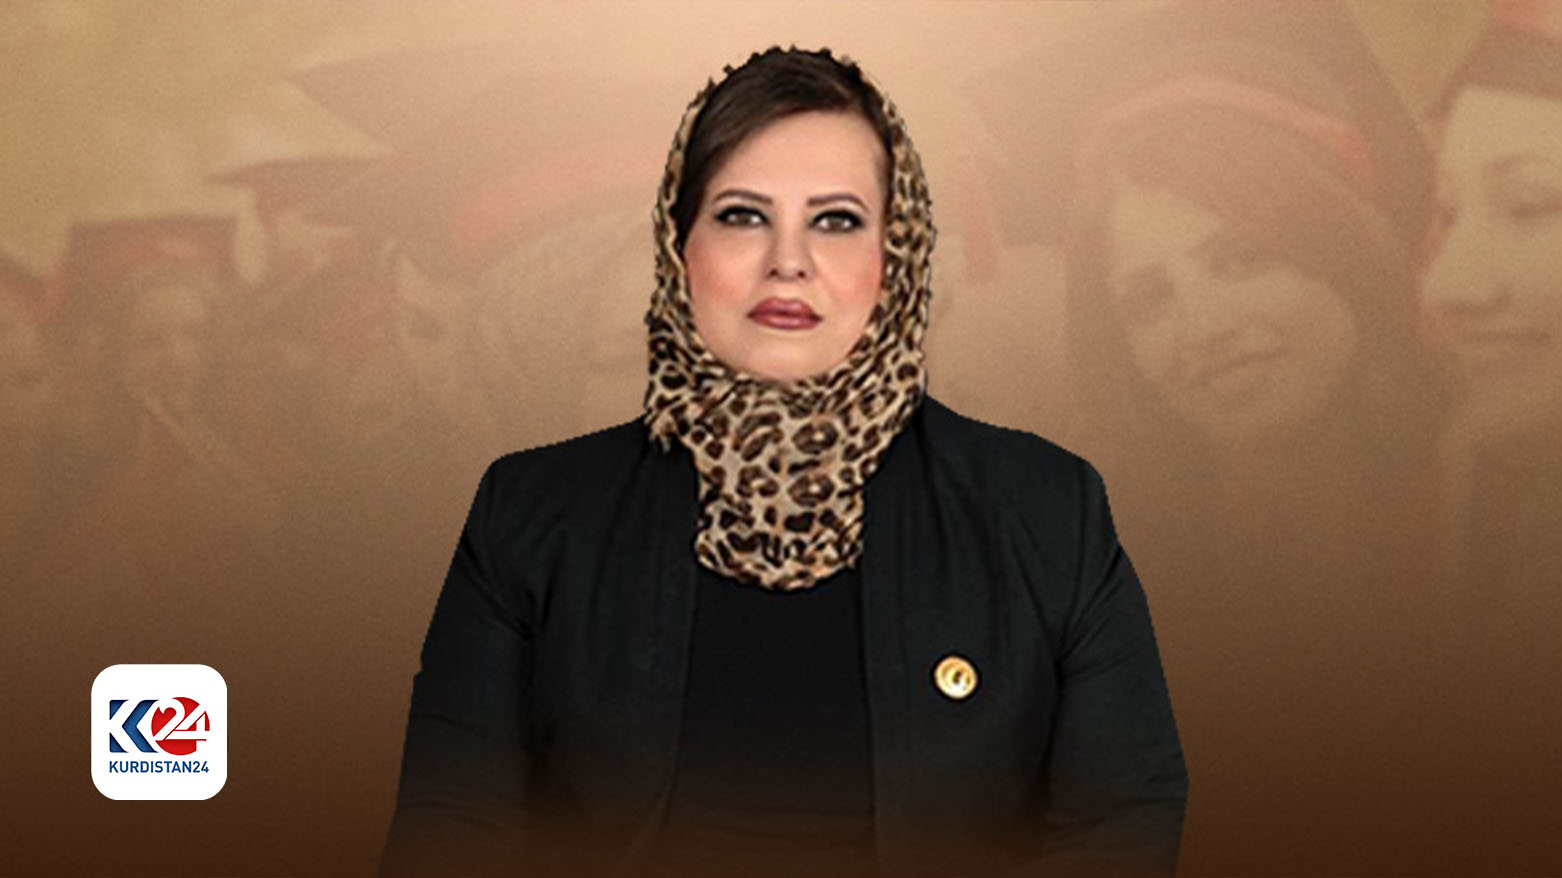 نهله افندی عضو فراکسیون پارت دموکرات کوردستان در پارلمان عراق